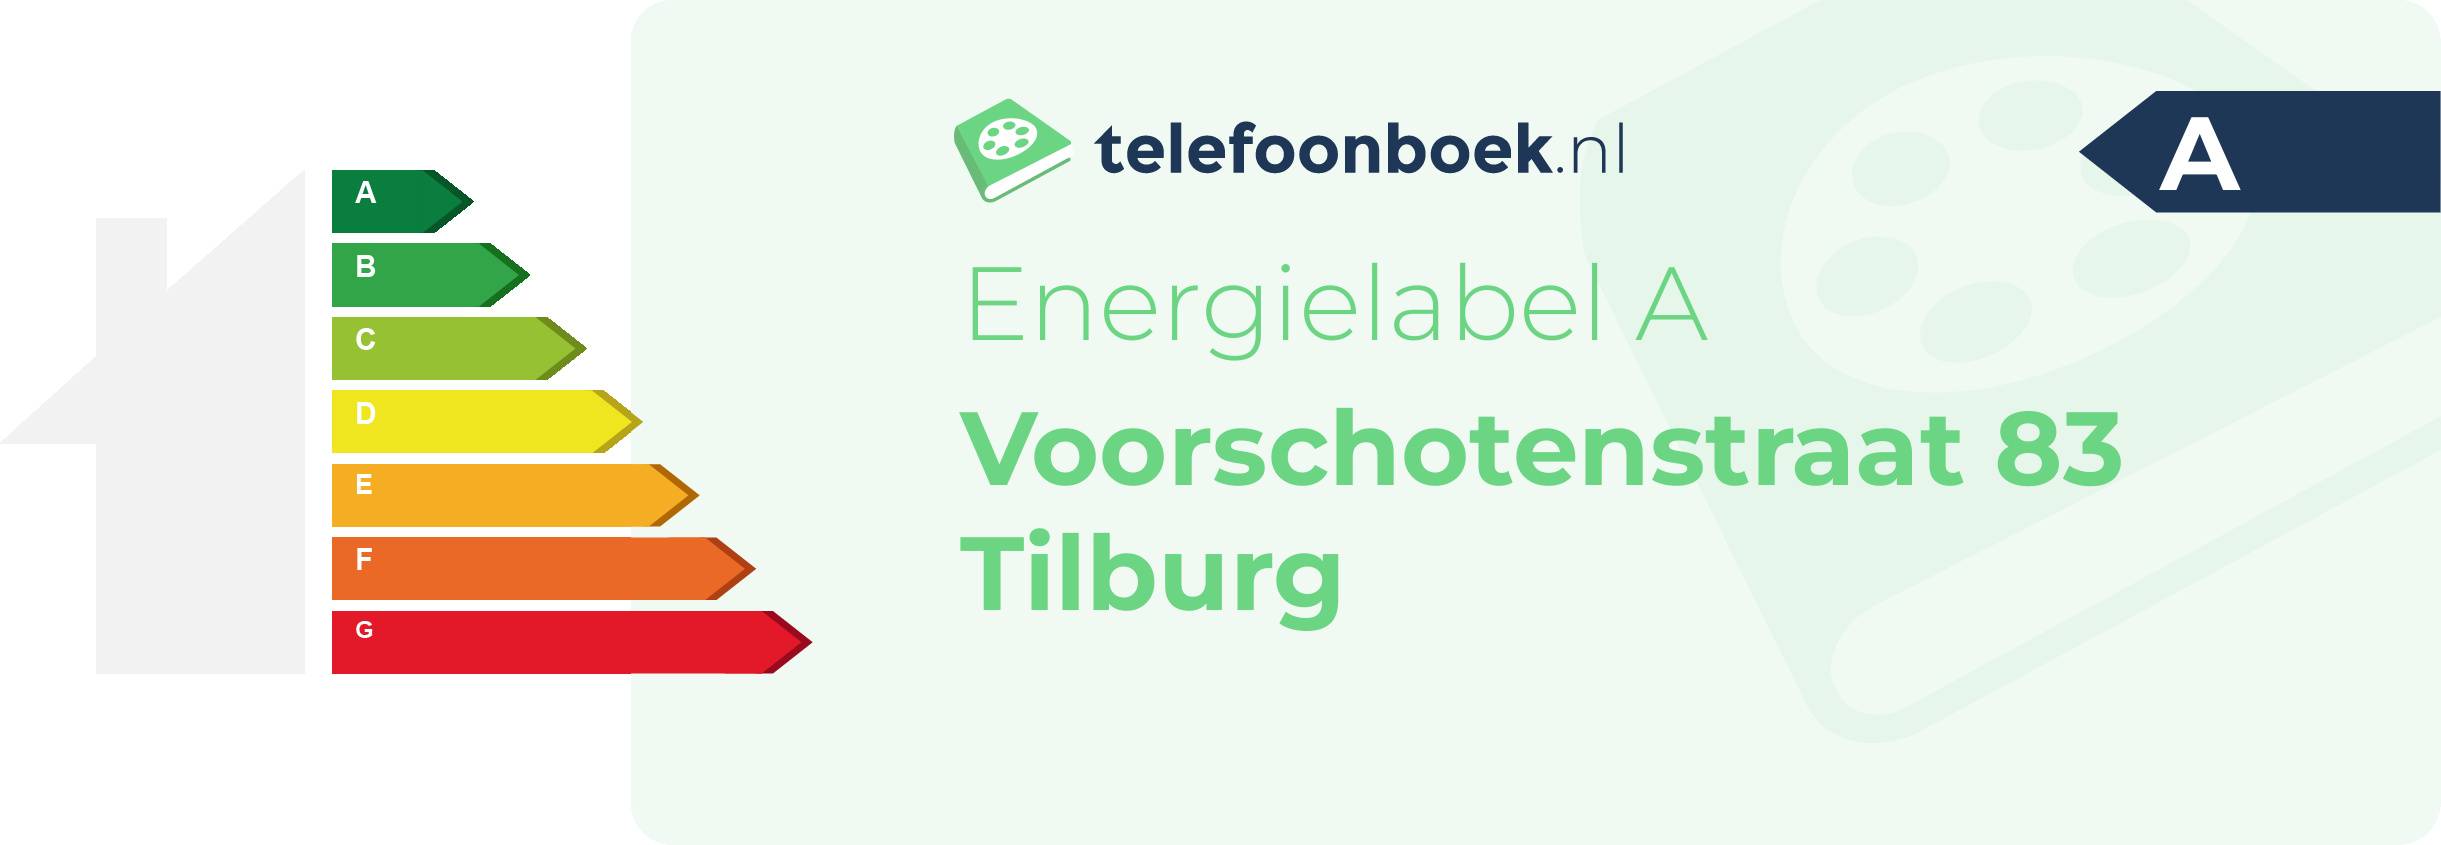 Energielabel Voorschotenstraat 83 Tilburg